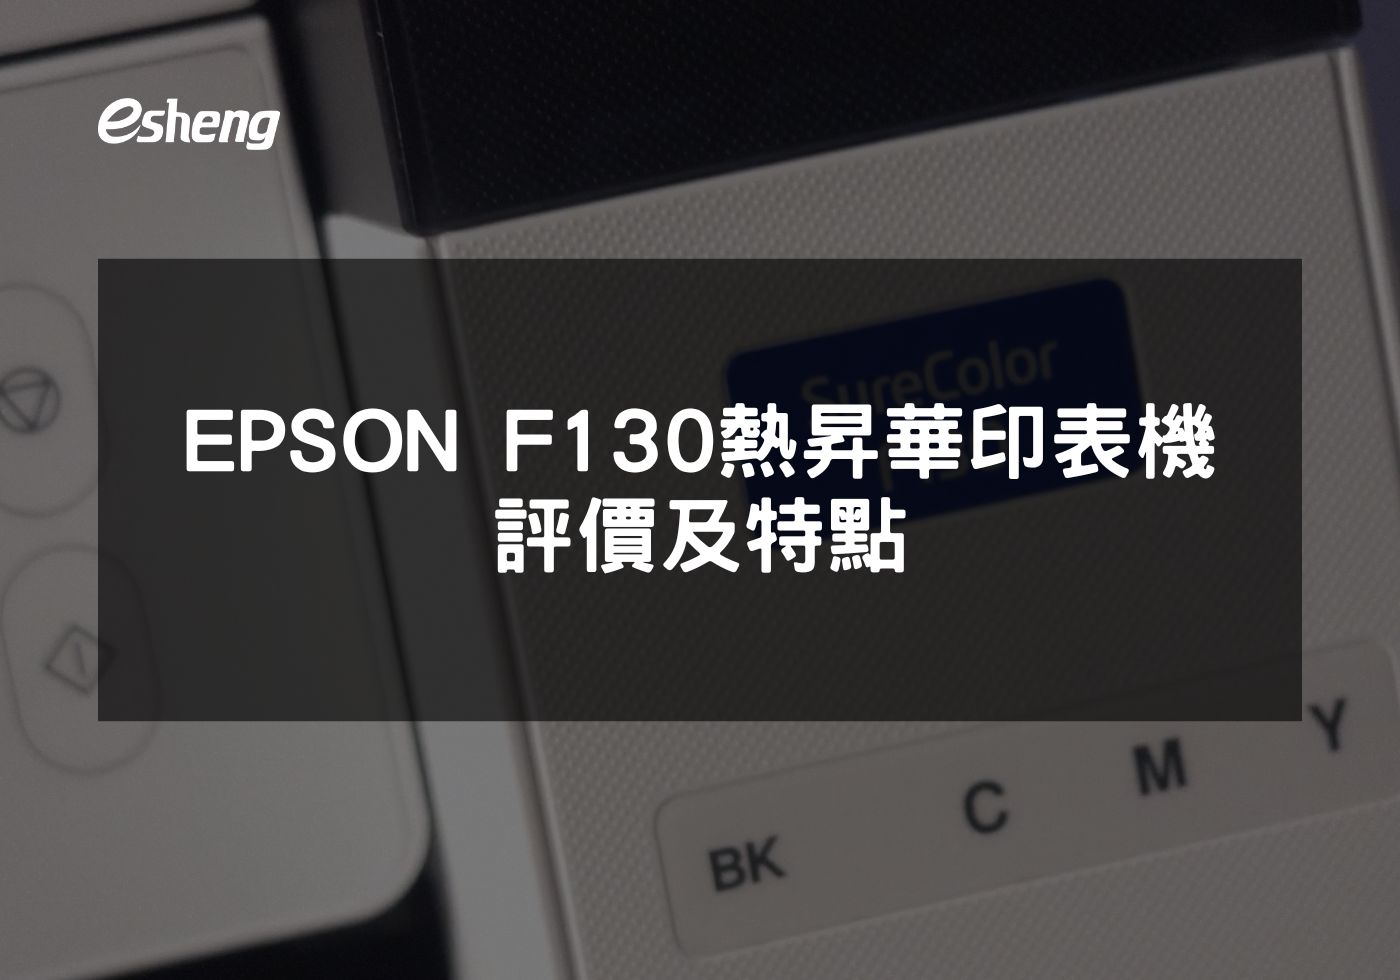 閱讀更多文章 EPSON F130 熱昇華印表機評價及特點